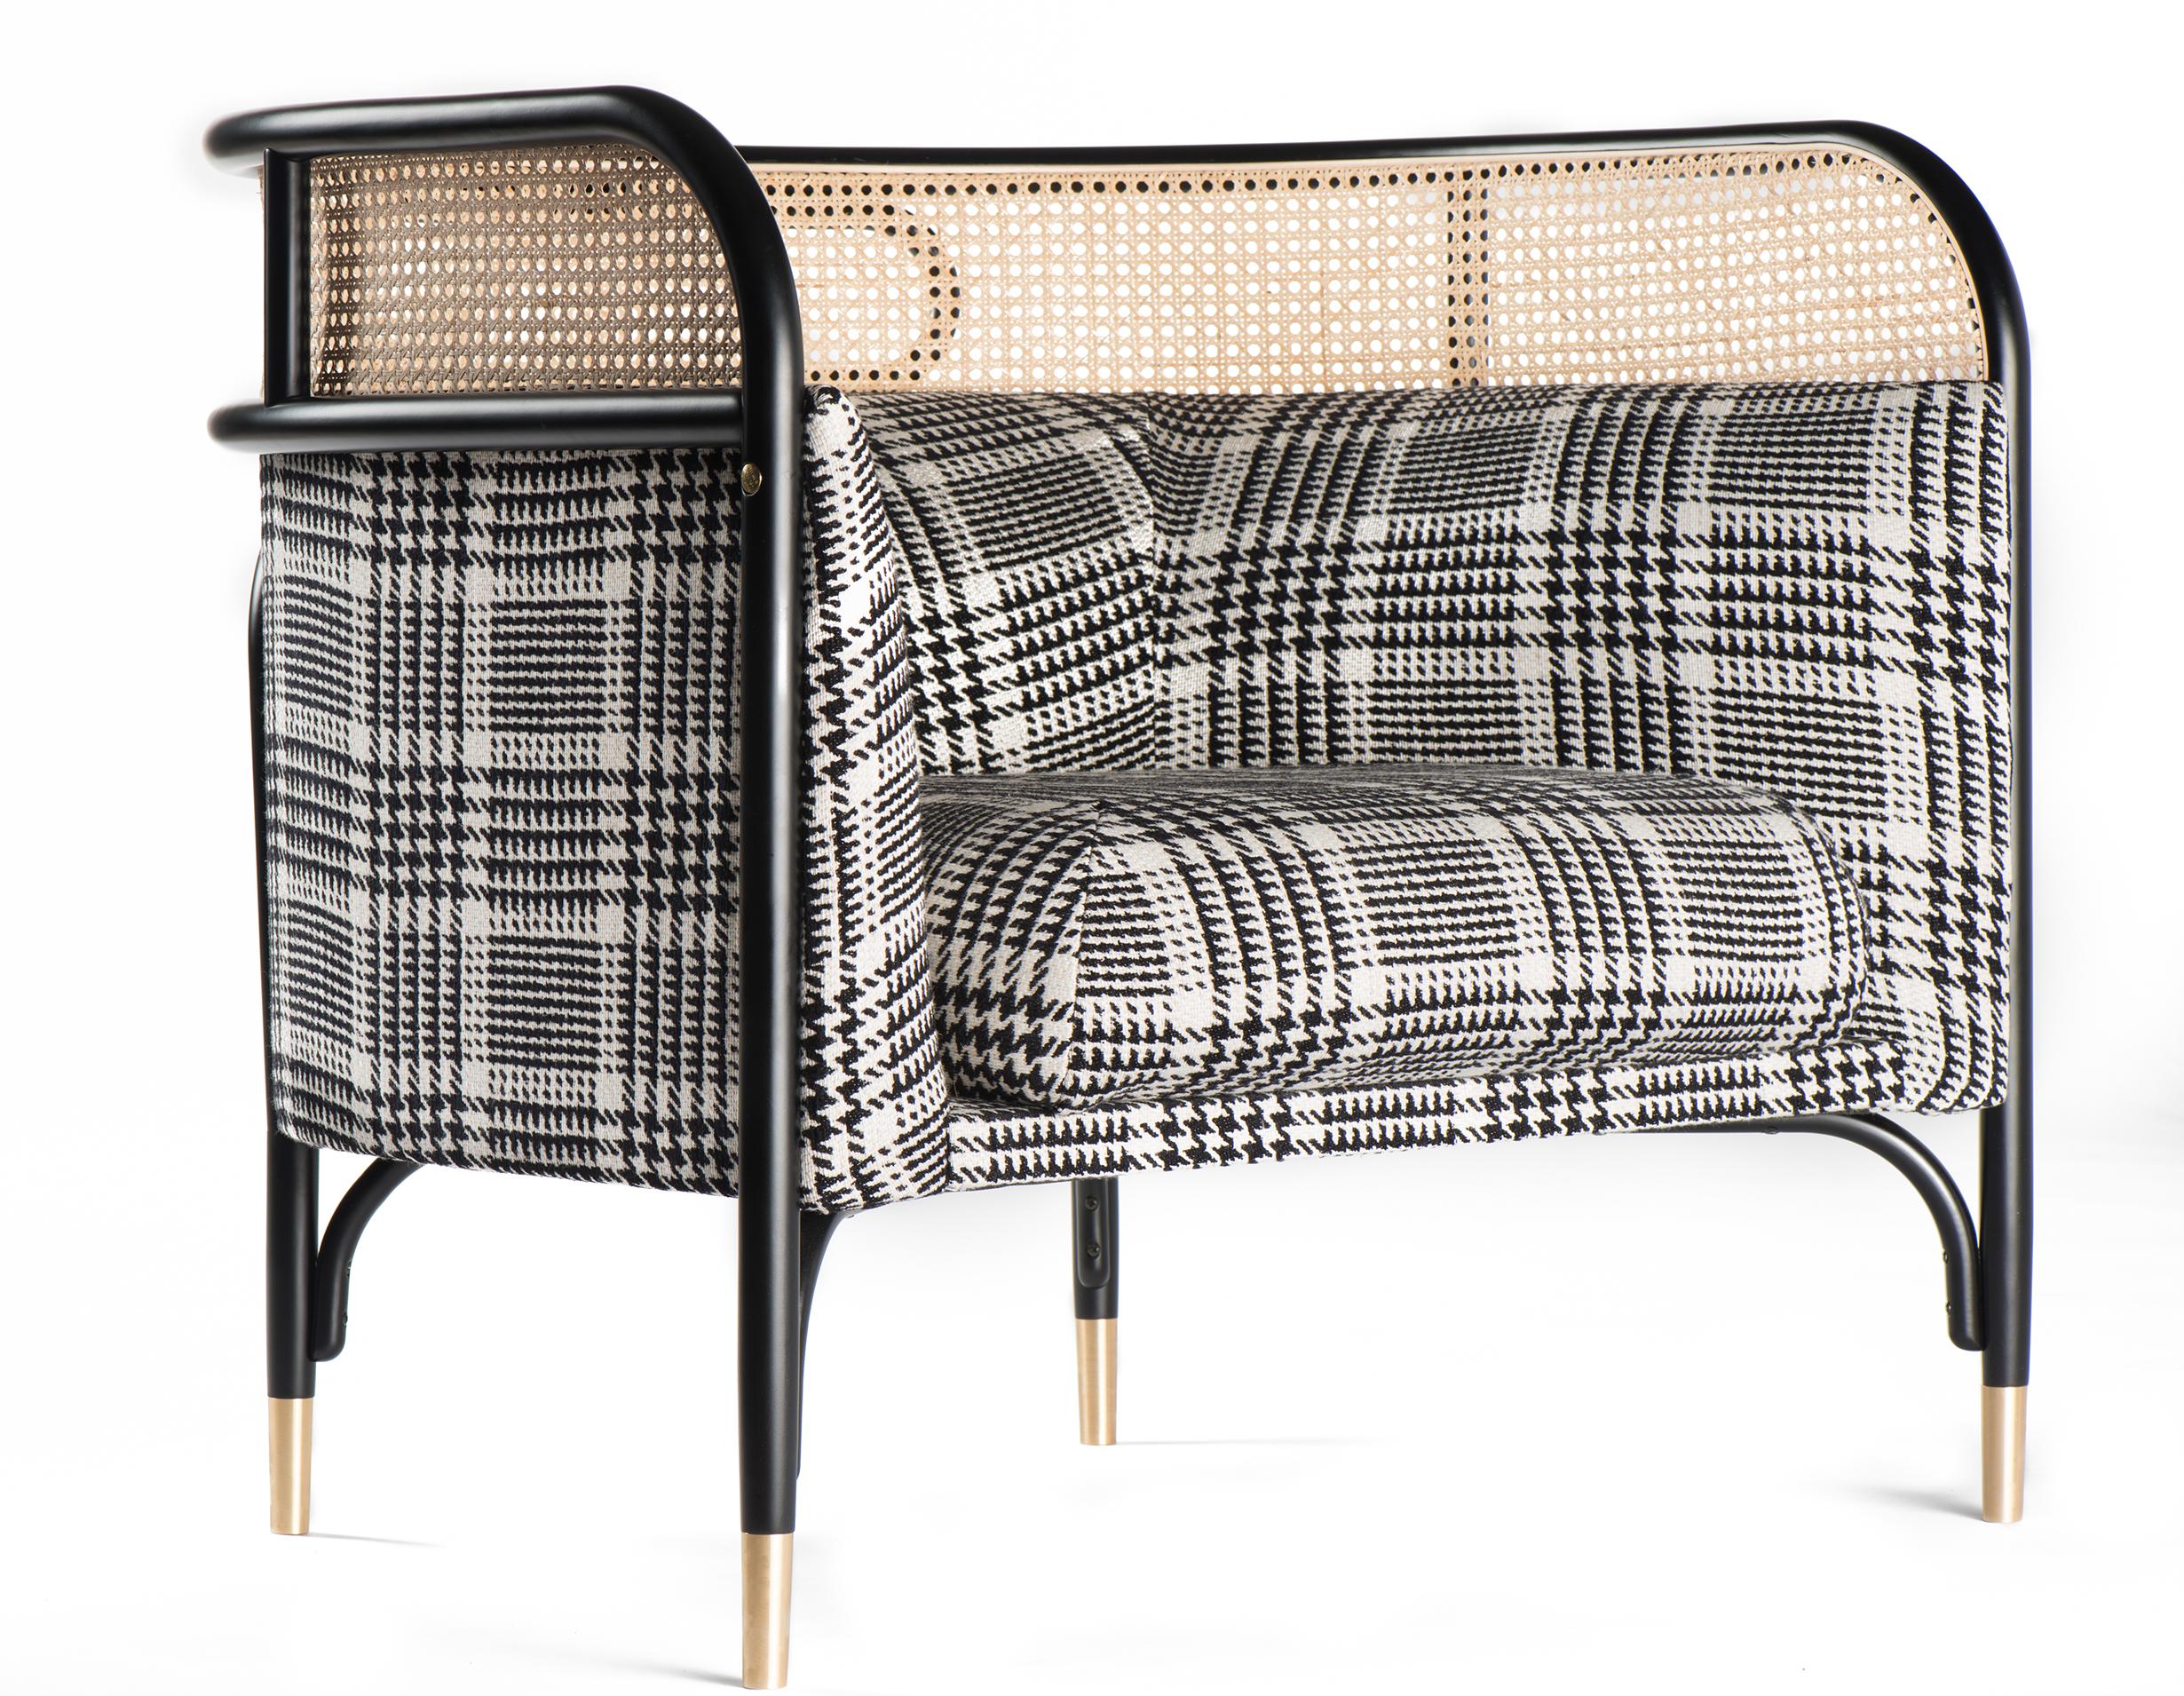 La collection de tissus d'ameublement Wiener GTV Designs suggère un nouveau concept de confort conçu par GamFratesi, le duo de designers italo-danois Stine Gam et Enrico Fratesi. TARGA est une famille composée d'un élégant canapé deux places et d'un